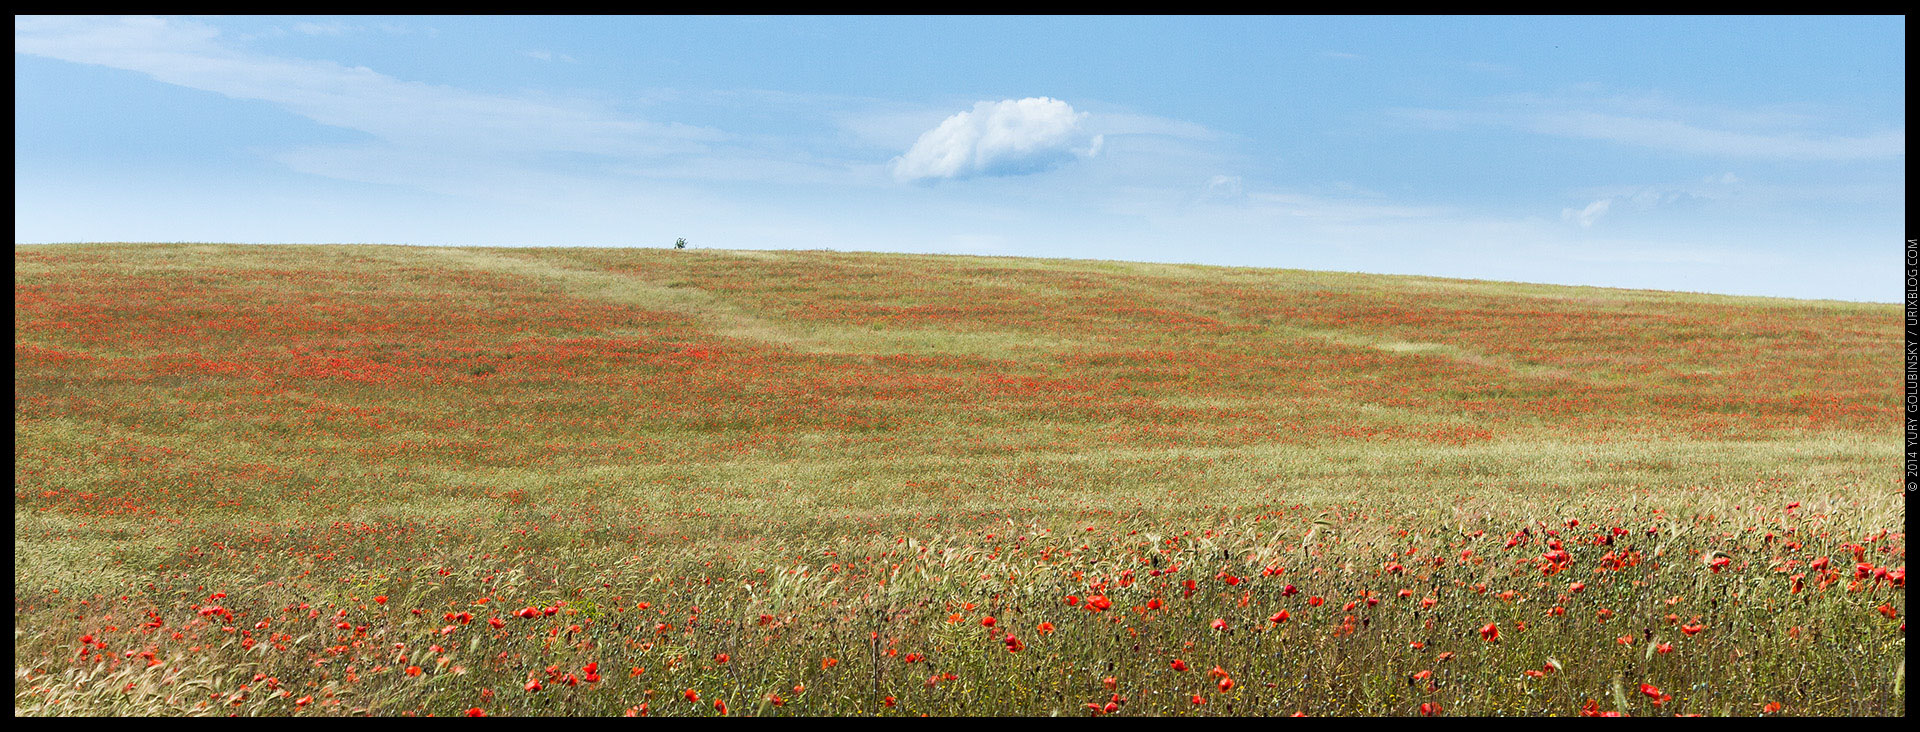 Crimea, Crimean penonsula, panorama, poppy, poppies, field, Simferopol, Russia, 2014, former Ukraine territory